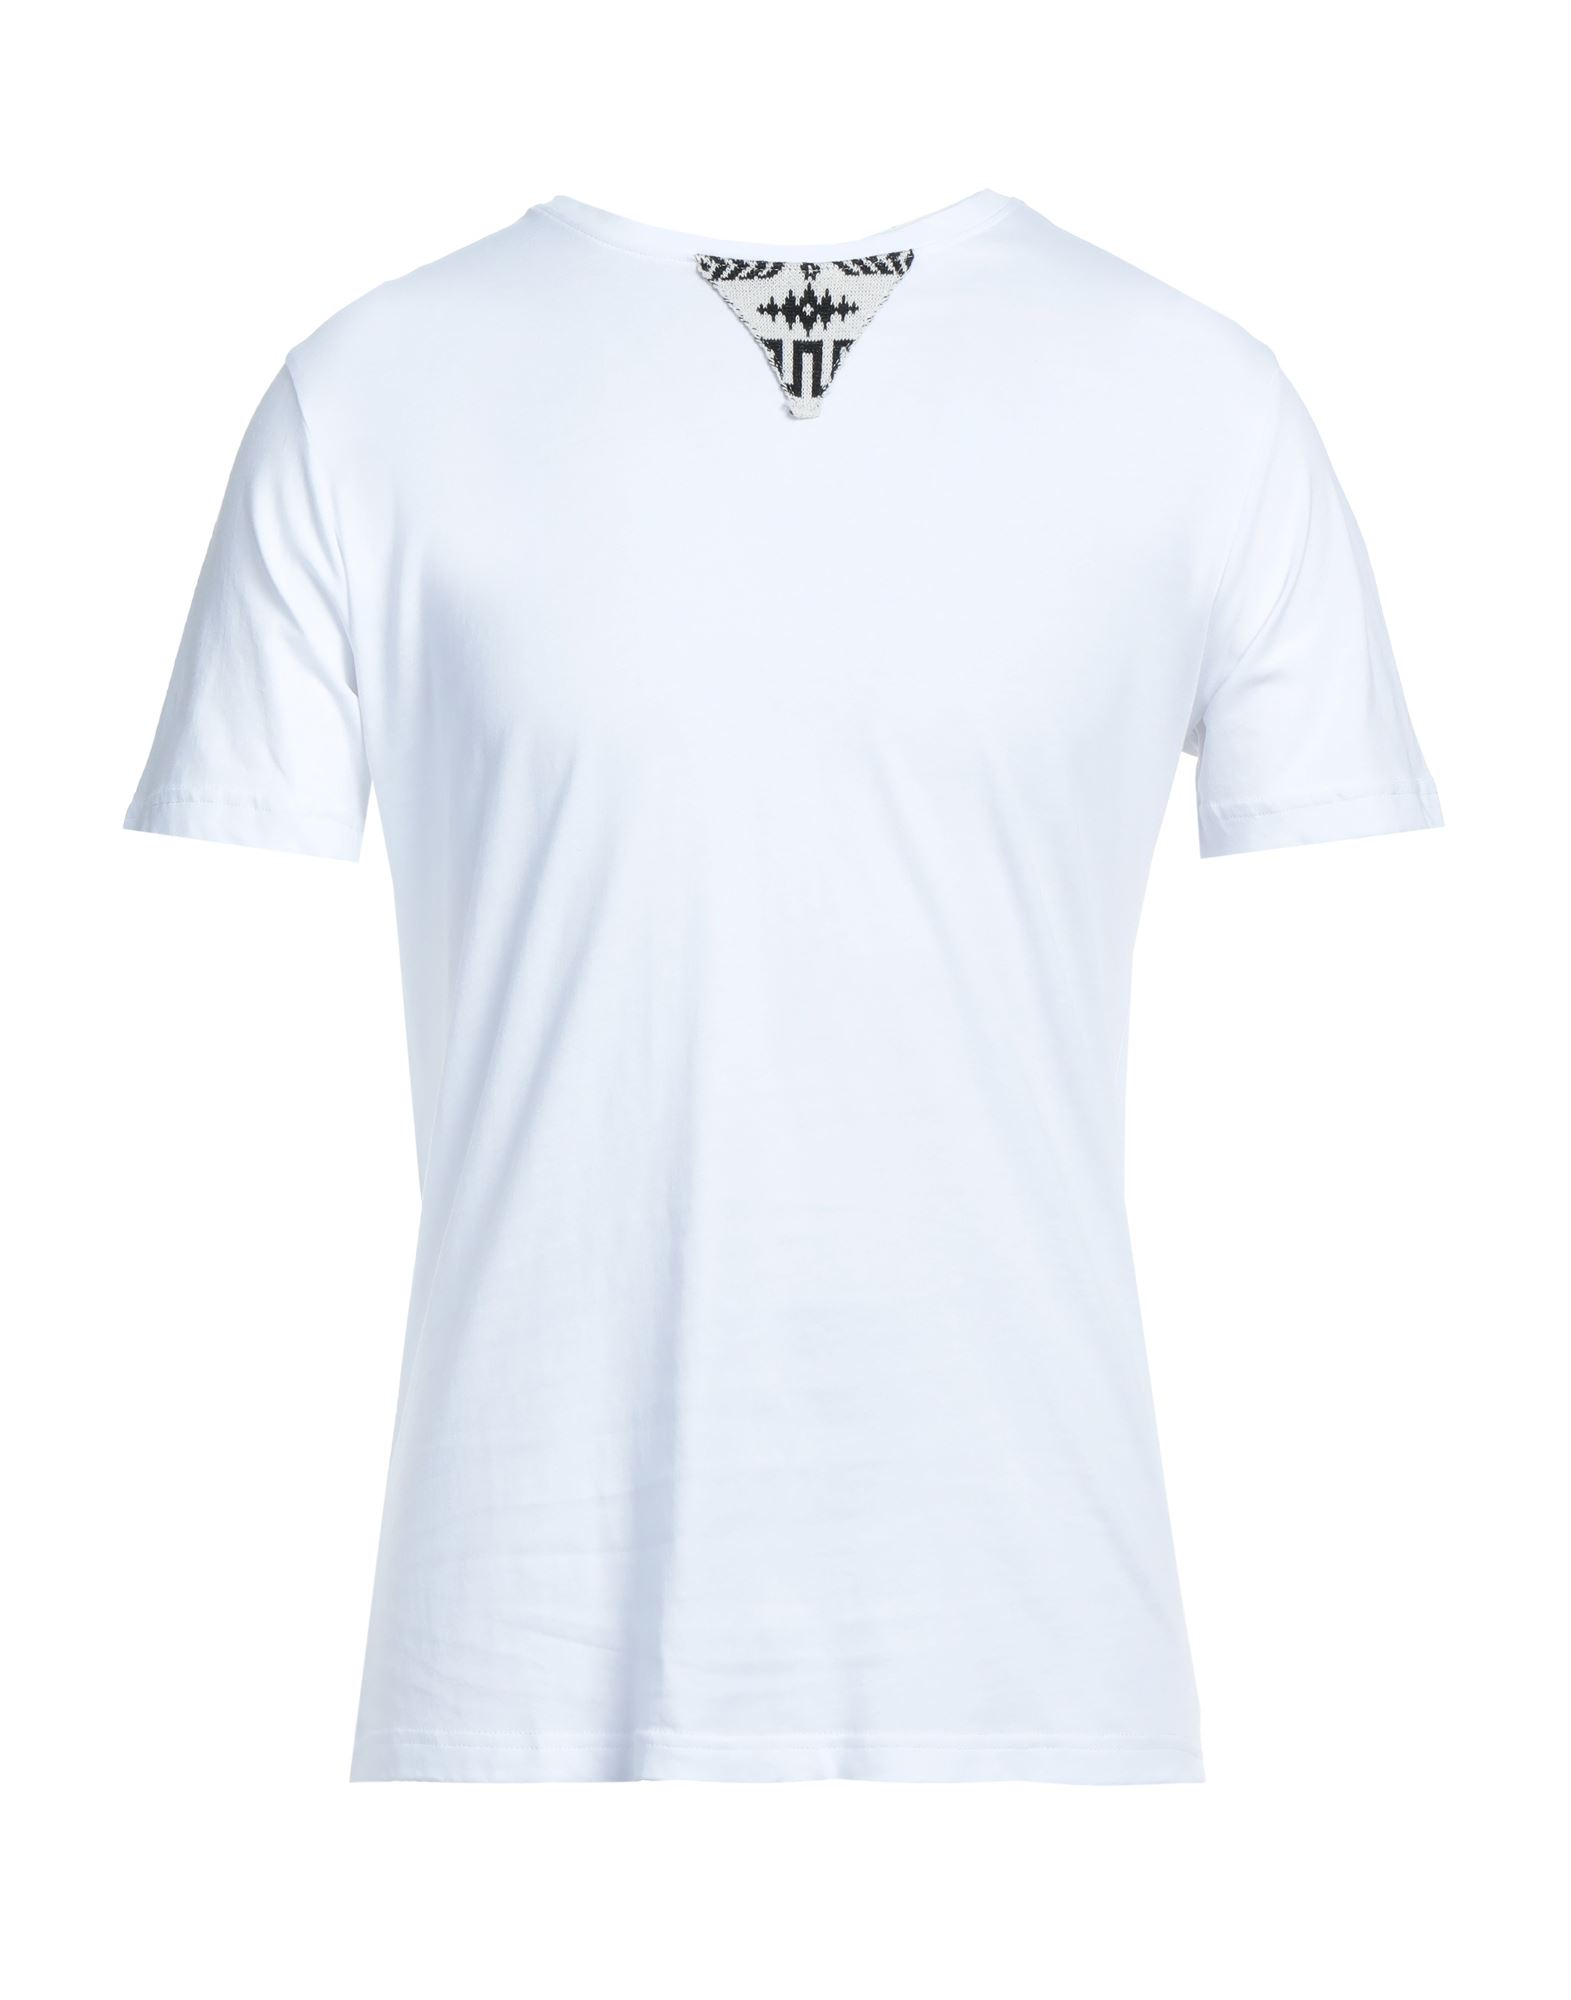 STILOSOPHY T-shirts Herren Weiß von STILOSOPHY